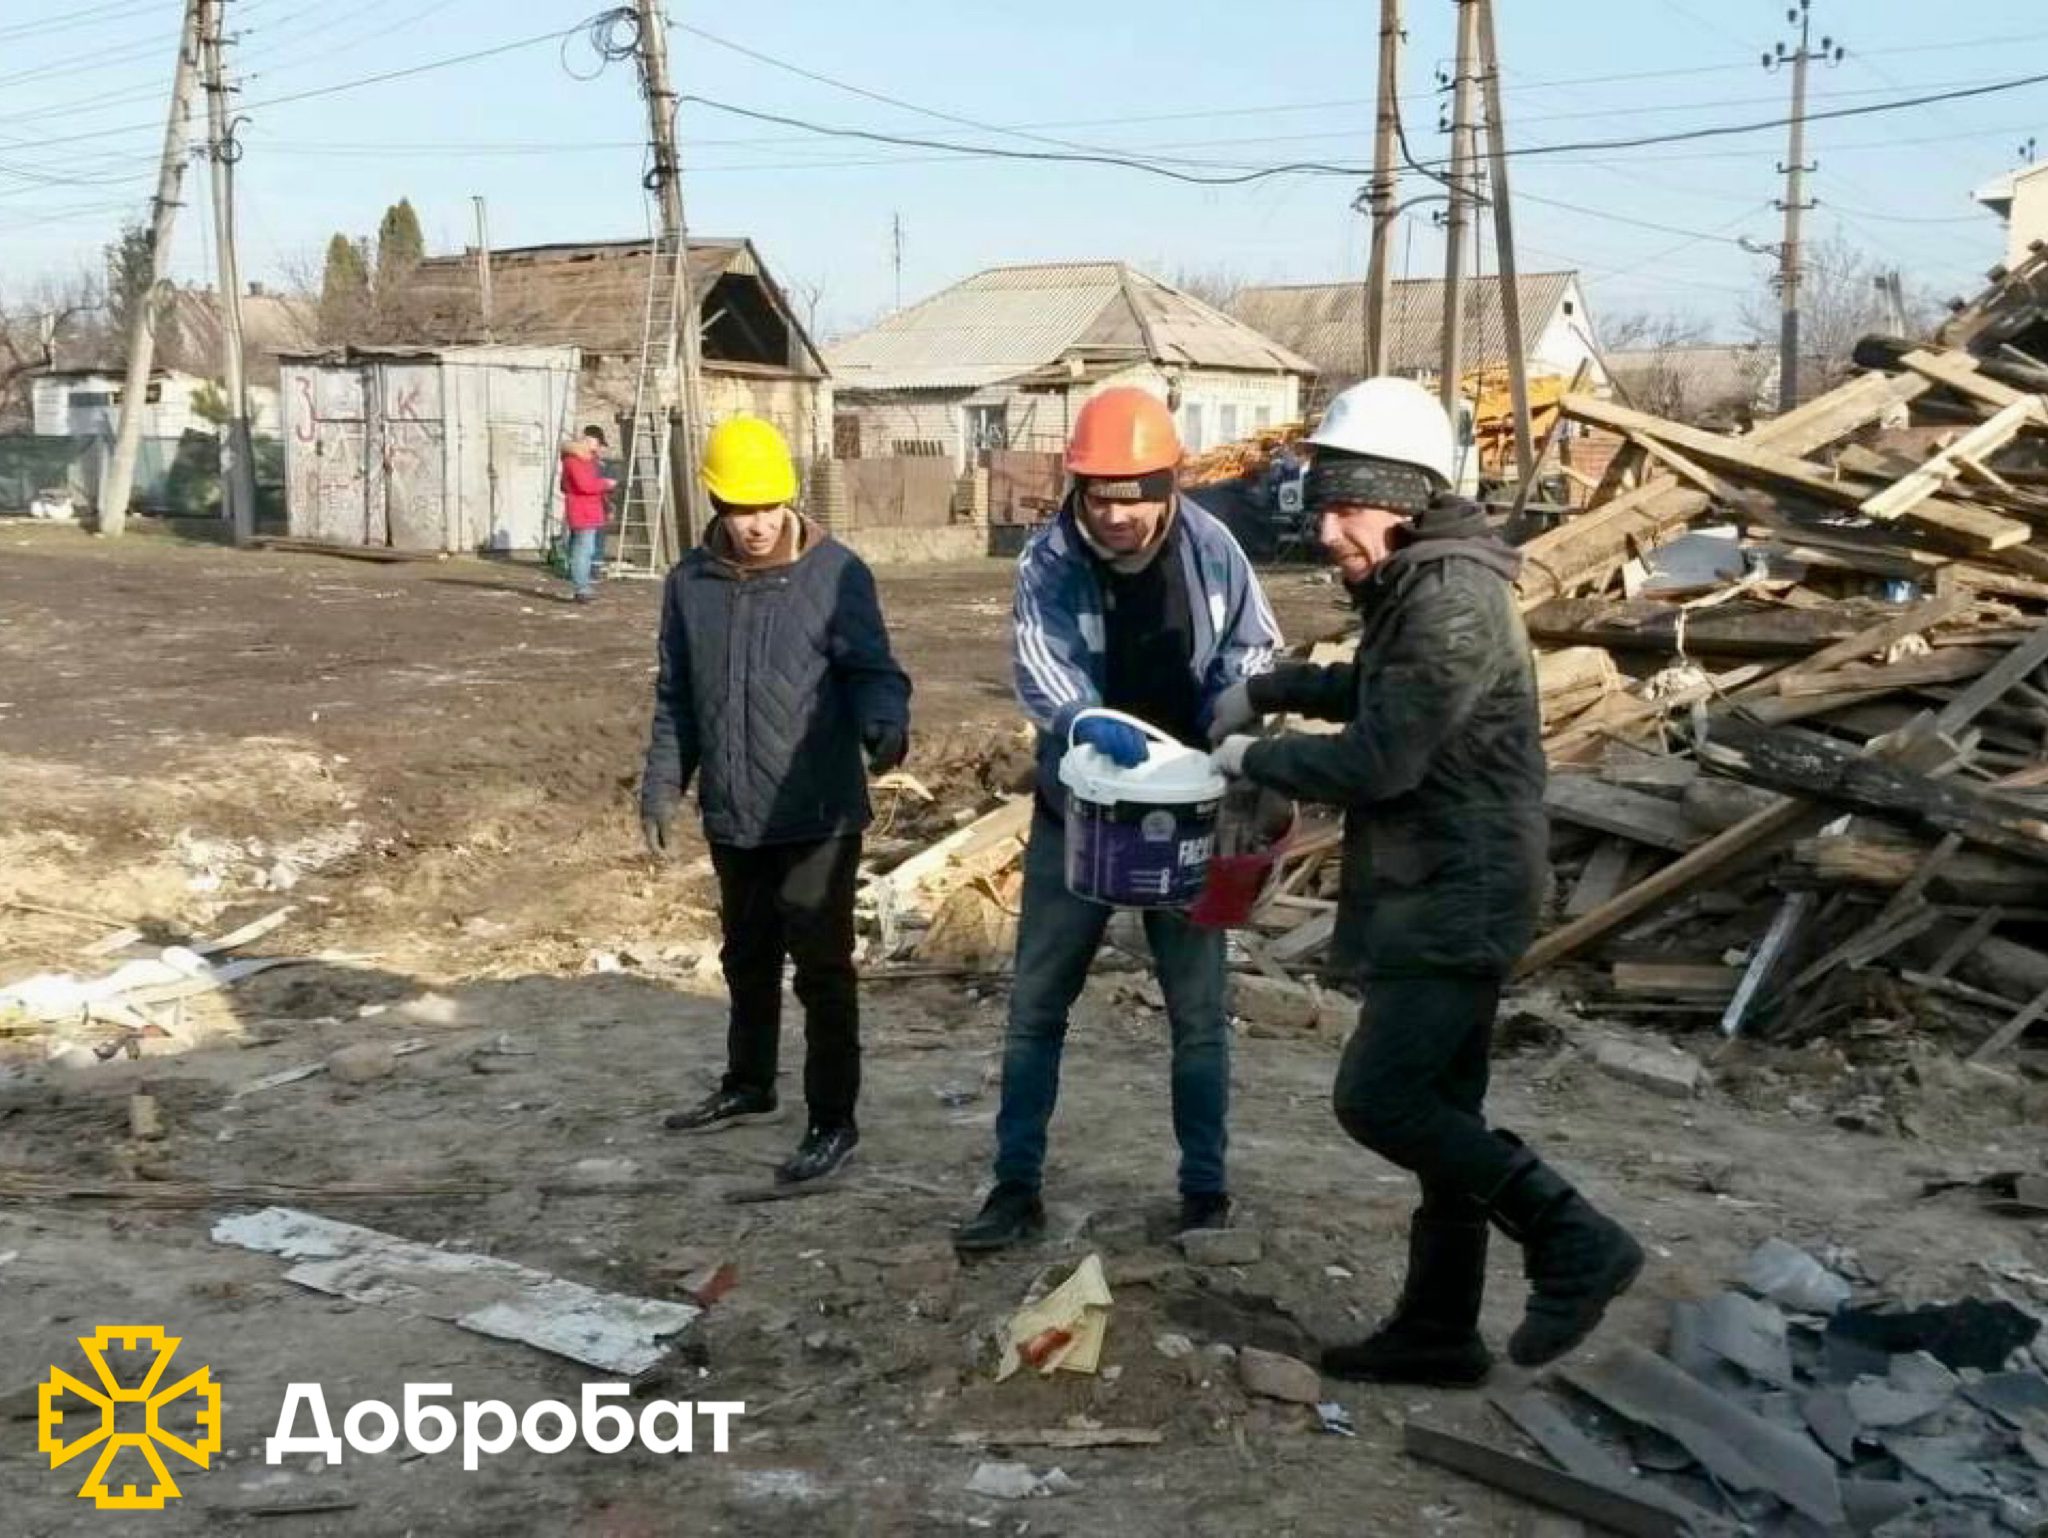 Починаємо новий рік, як годиться — з відбудови країни та допомоги українцям.